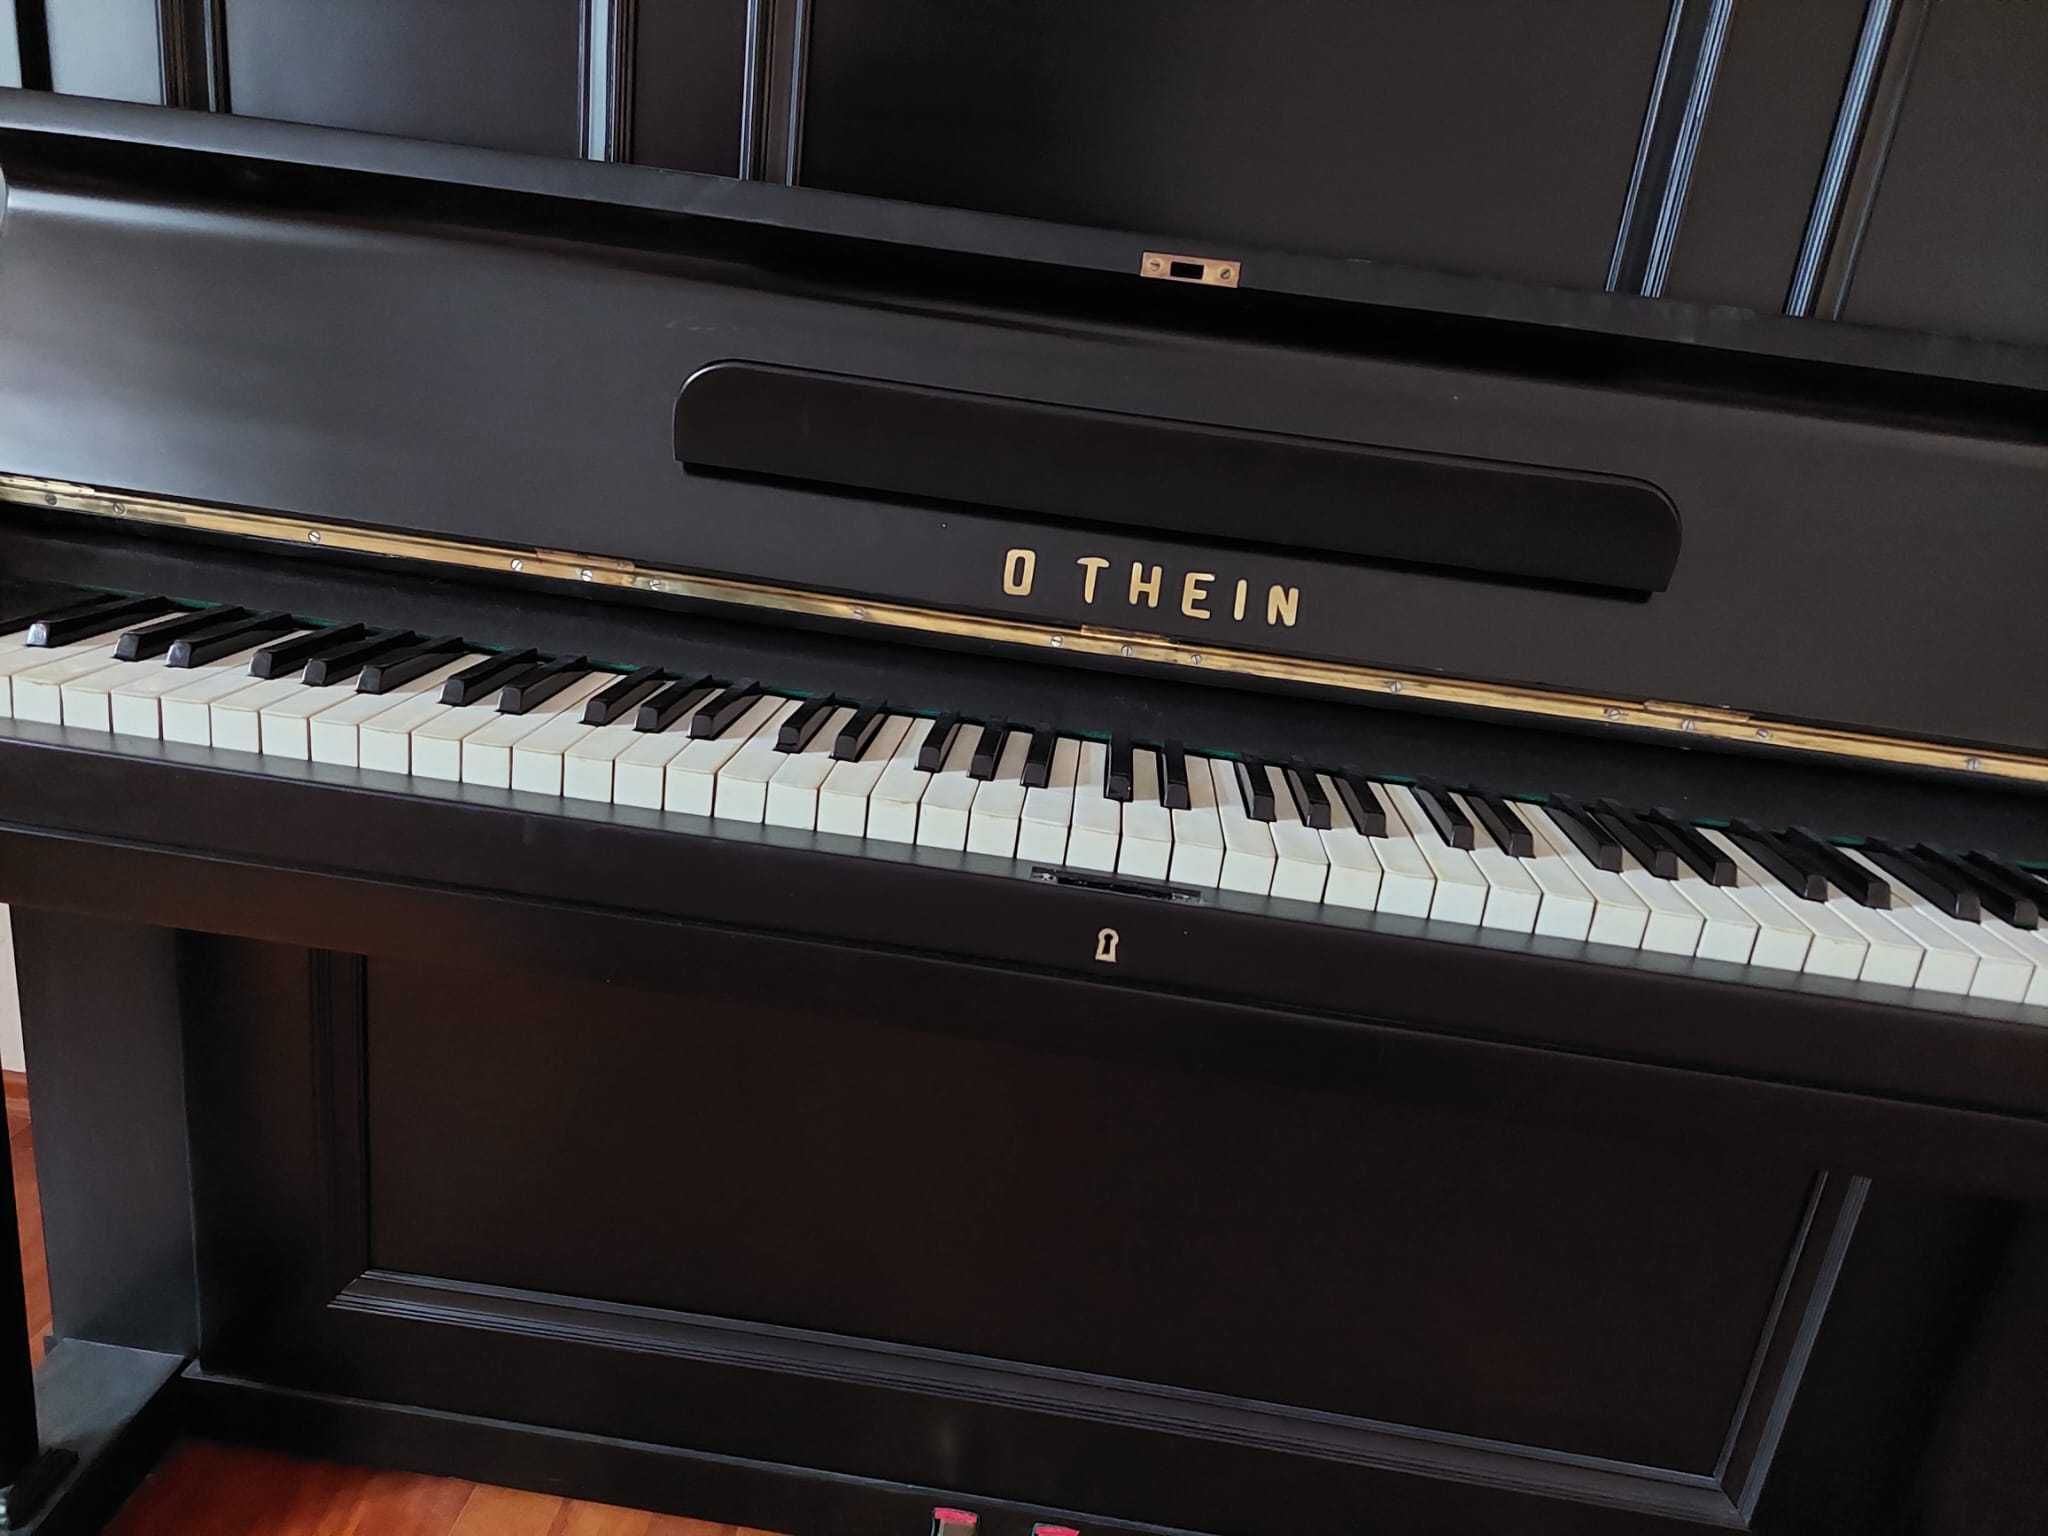 Pianino OTHEIN po generalnym remoncie | Wspaniałe brzmienie